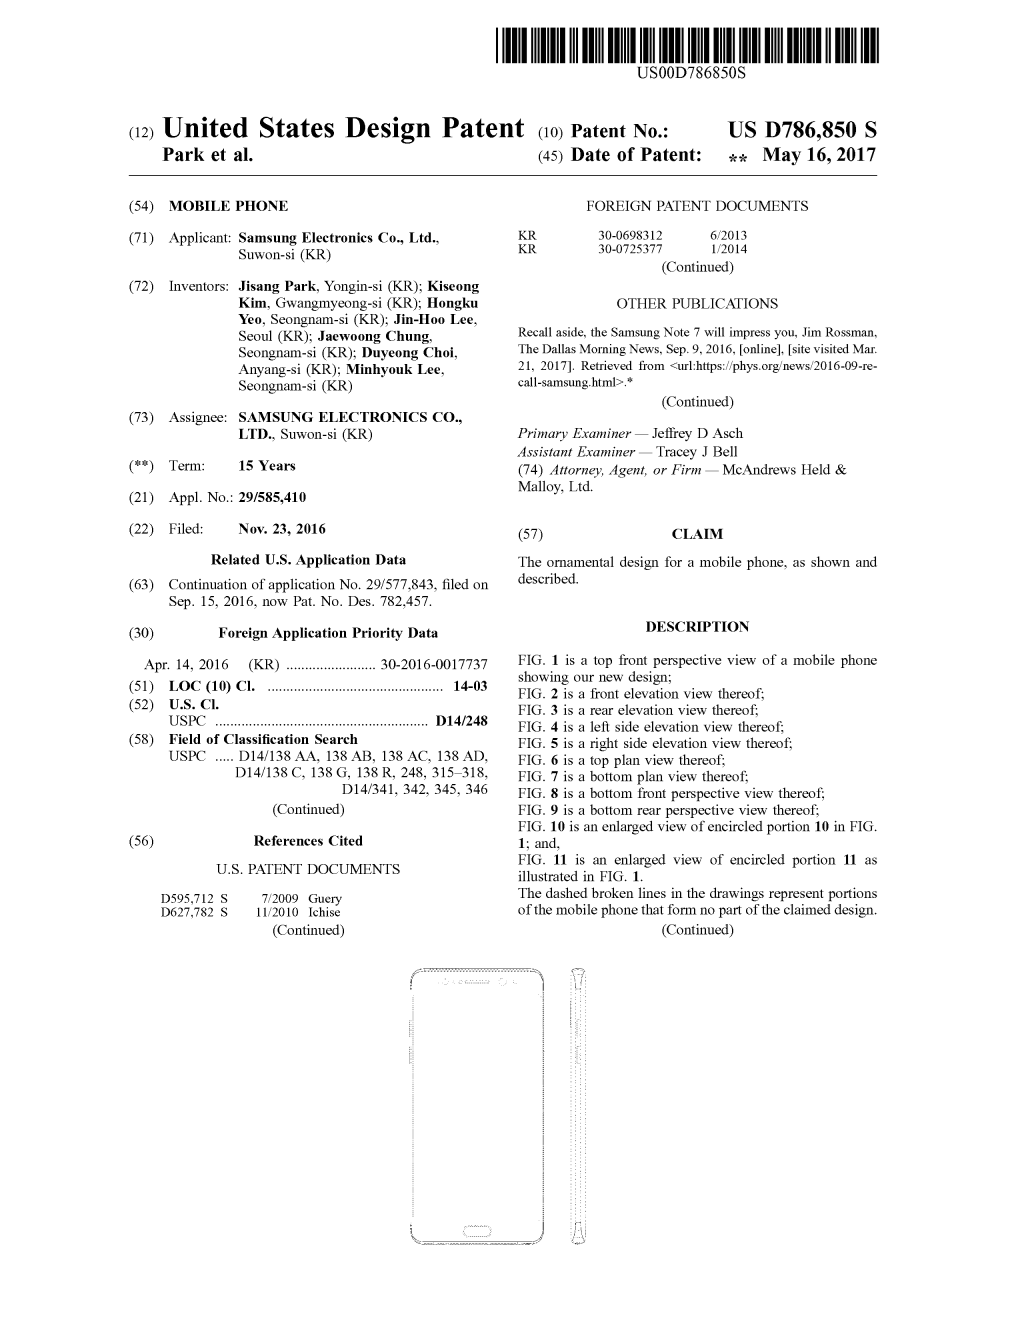 (12) United States Design Patent (10) Patent No.: US D786,850 S Park Et Al